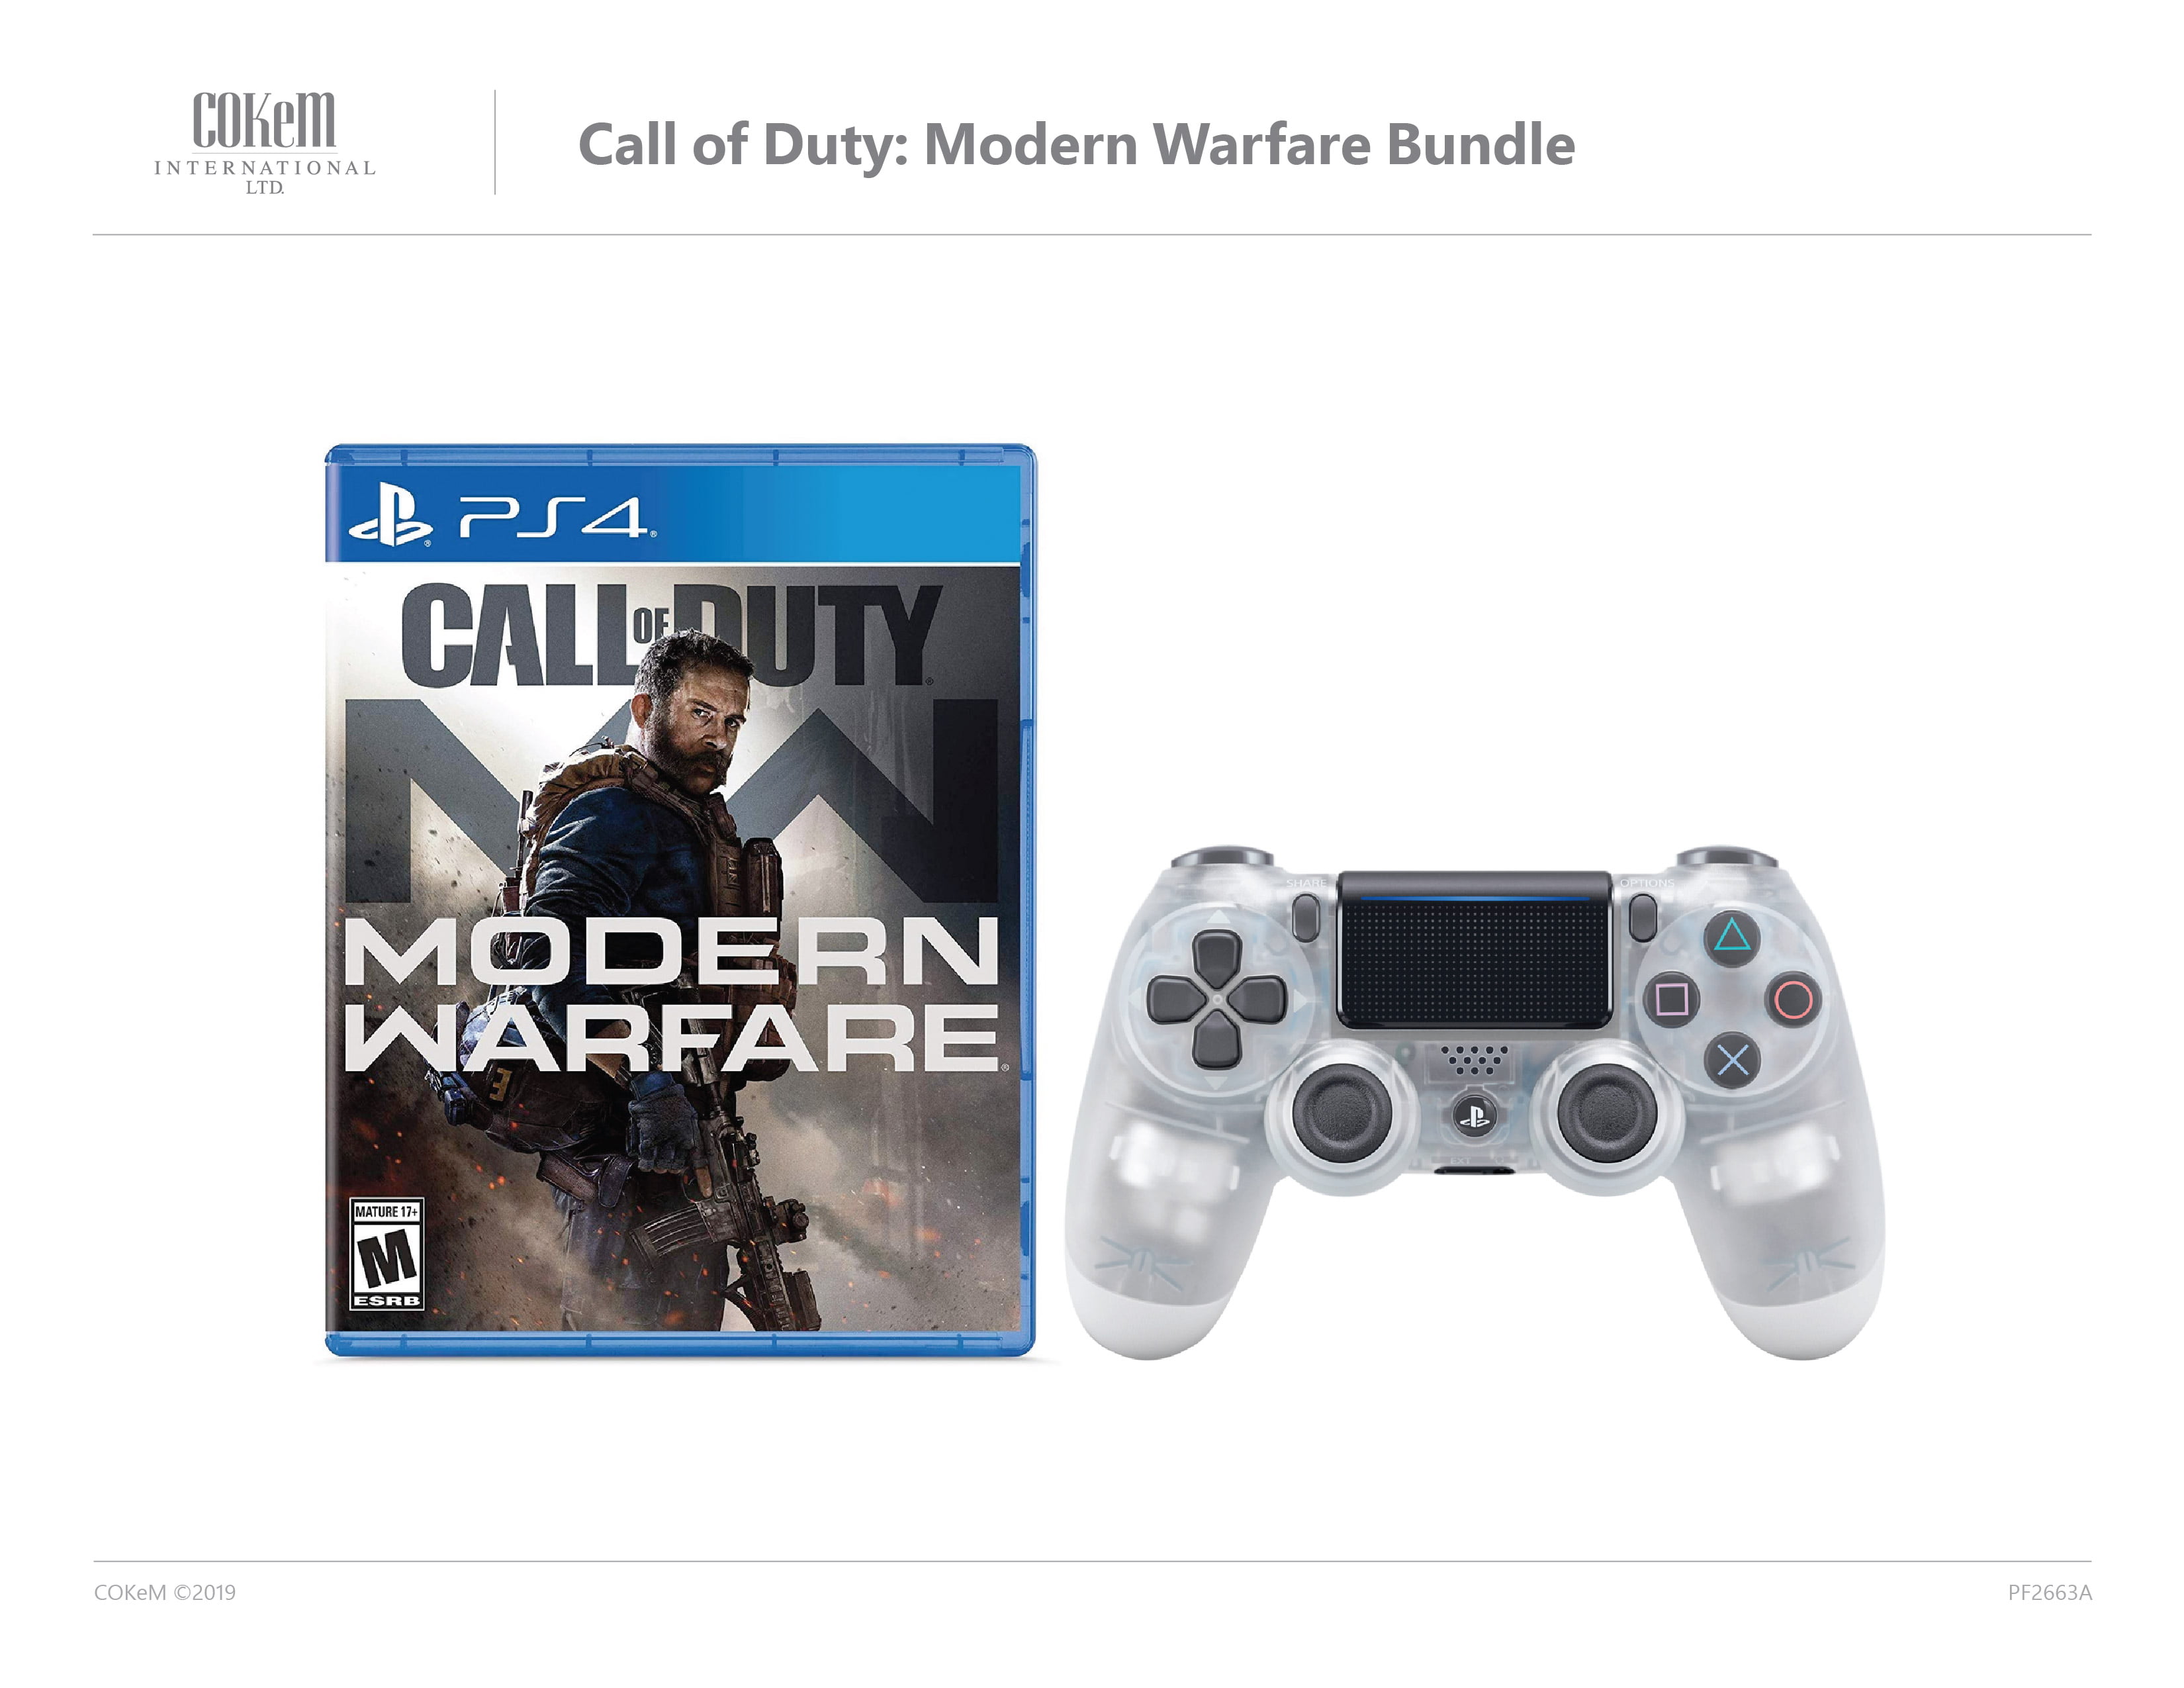 Call of Duty Modern Warfare & Sony Crystal Controller Bundle PlayStation 4 Walmart.com